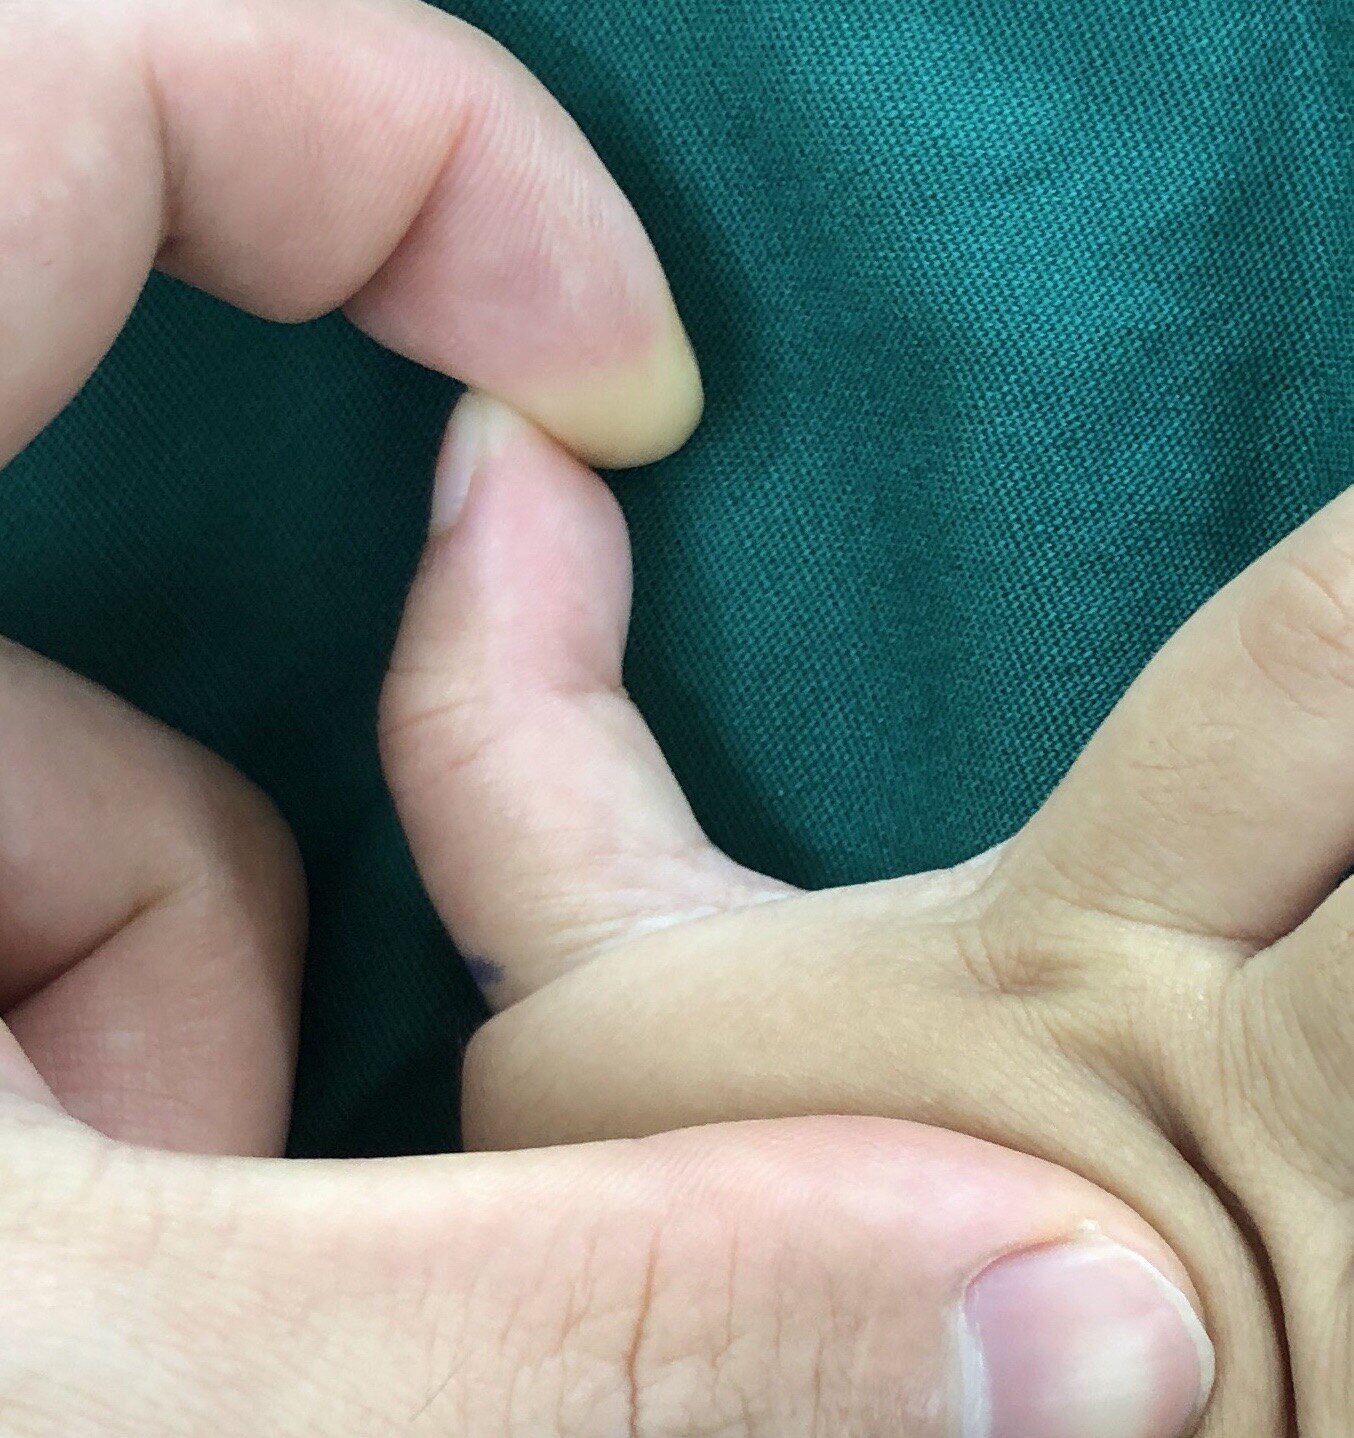 孩子大拇指伸不直,原来是狭窄性腱鞘炎,微创松解伸直就舒服啦 